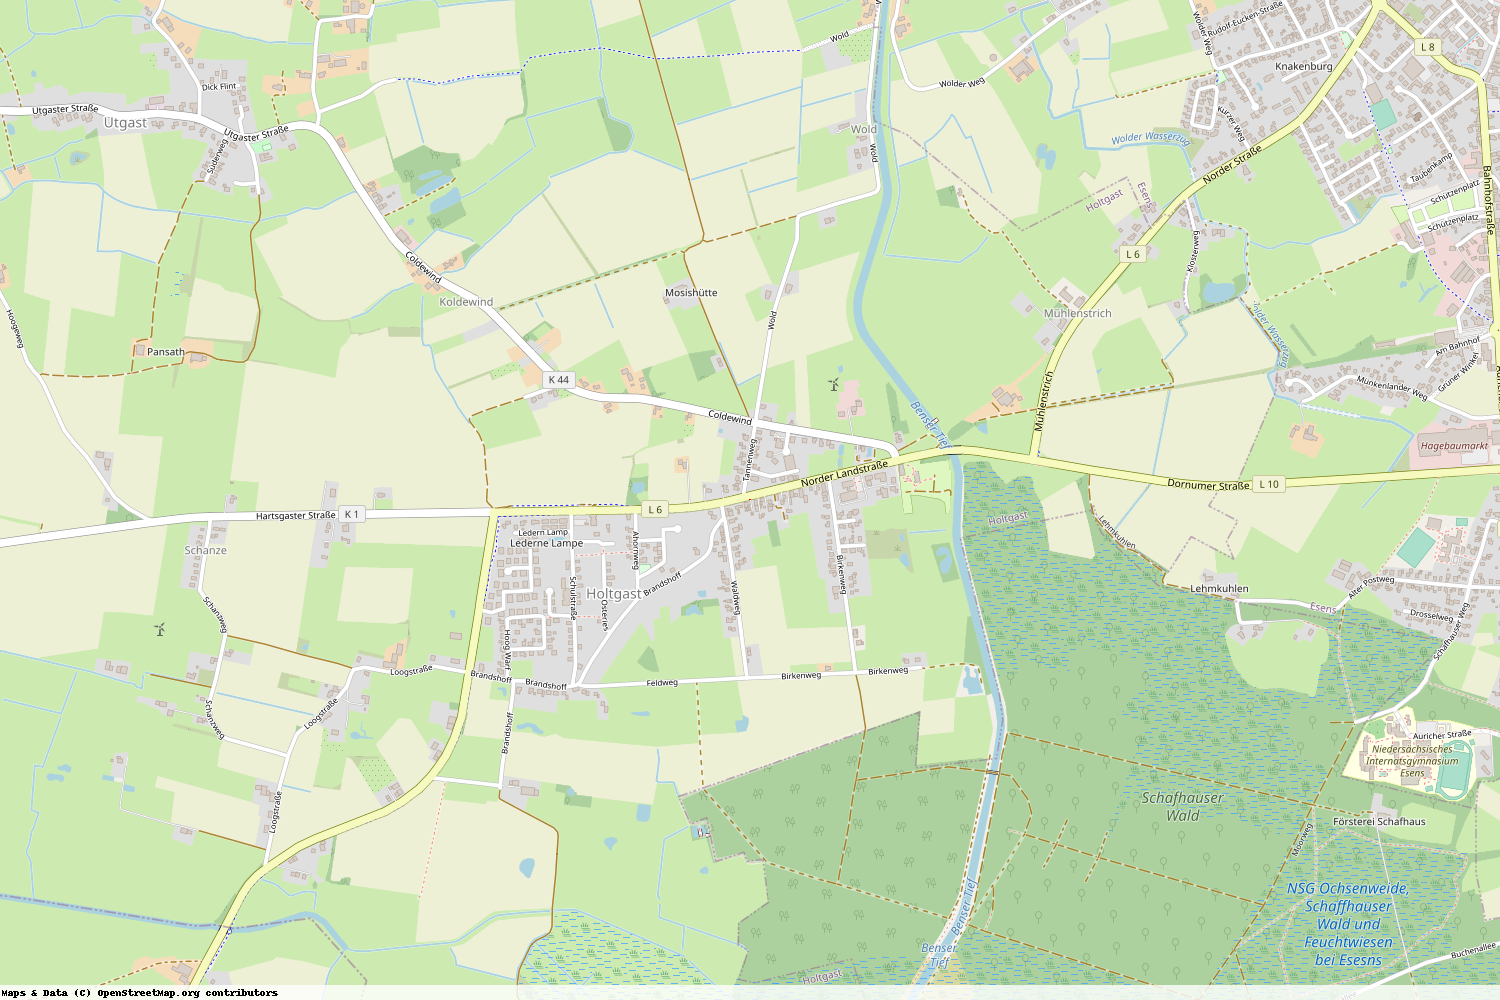 Ist gerade Stromausfall in Niedersachsen - Wittmund - Holtgast?